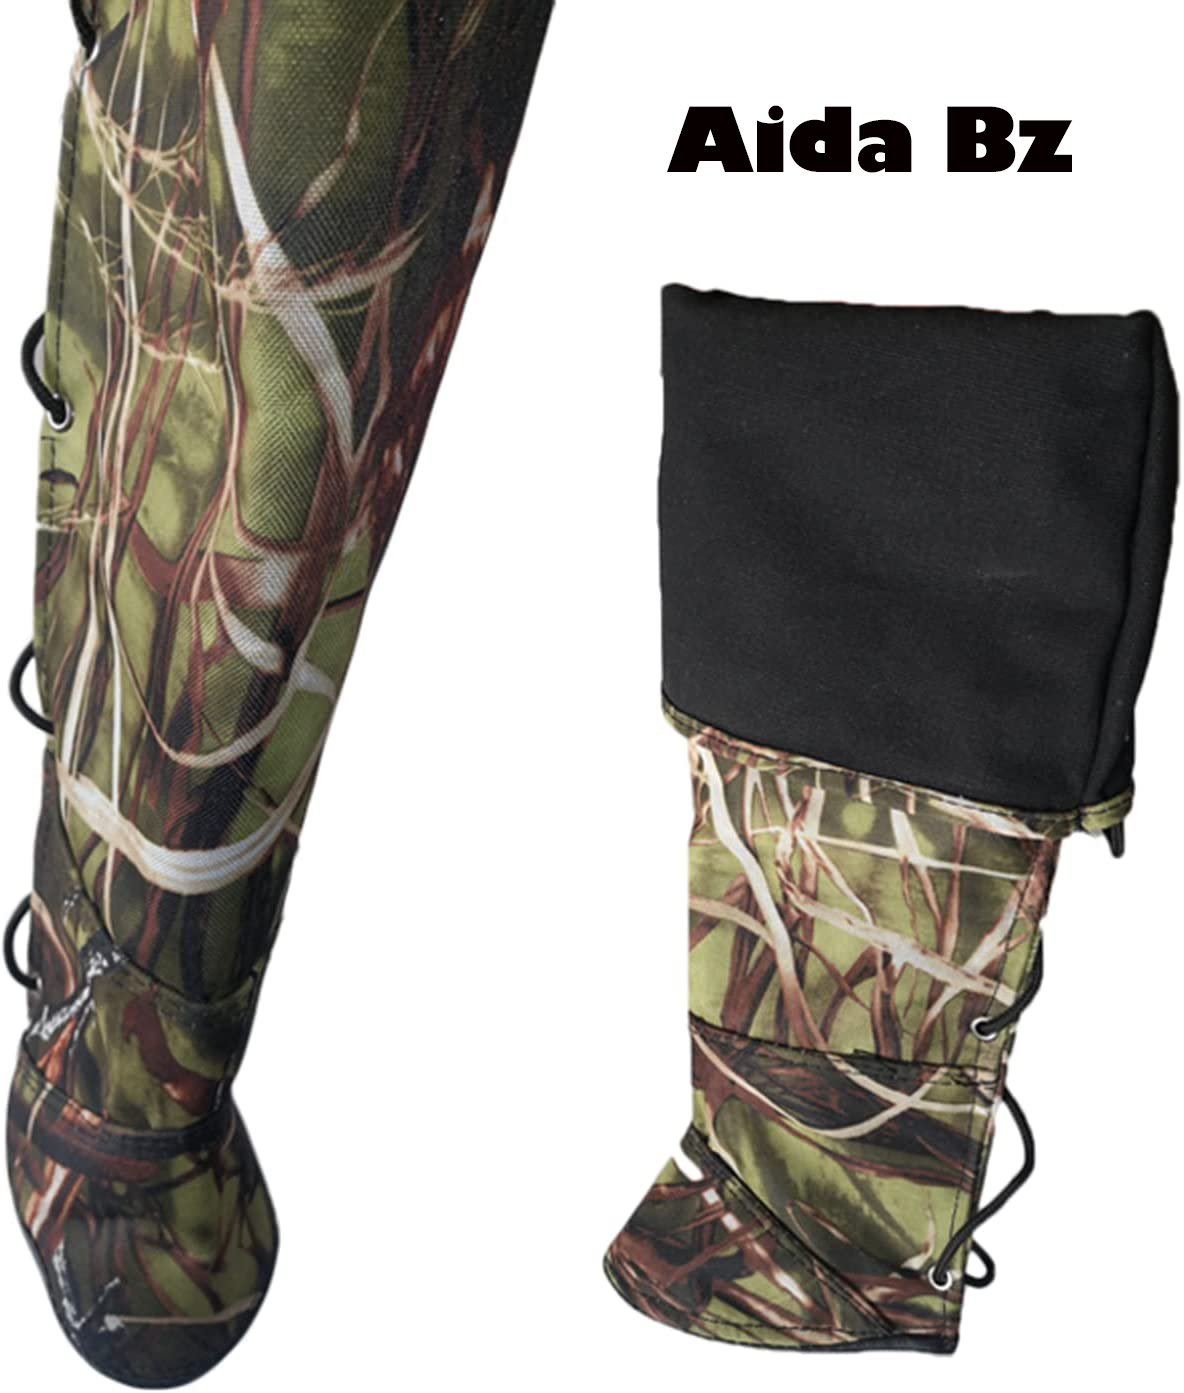 لباس ضد گزیدگی آموزش سگ  برند Aida Bz،  کد B50 ، یک ساق محافظ ضد پارگی در فضای باز ،  ماجراجویی ضد گزیدگی  ، دو لایه ضخیم  ، بوم ضد پارگی، XXL